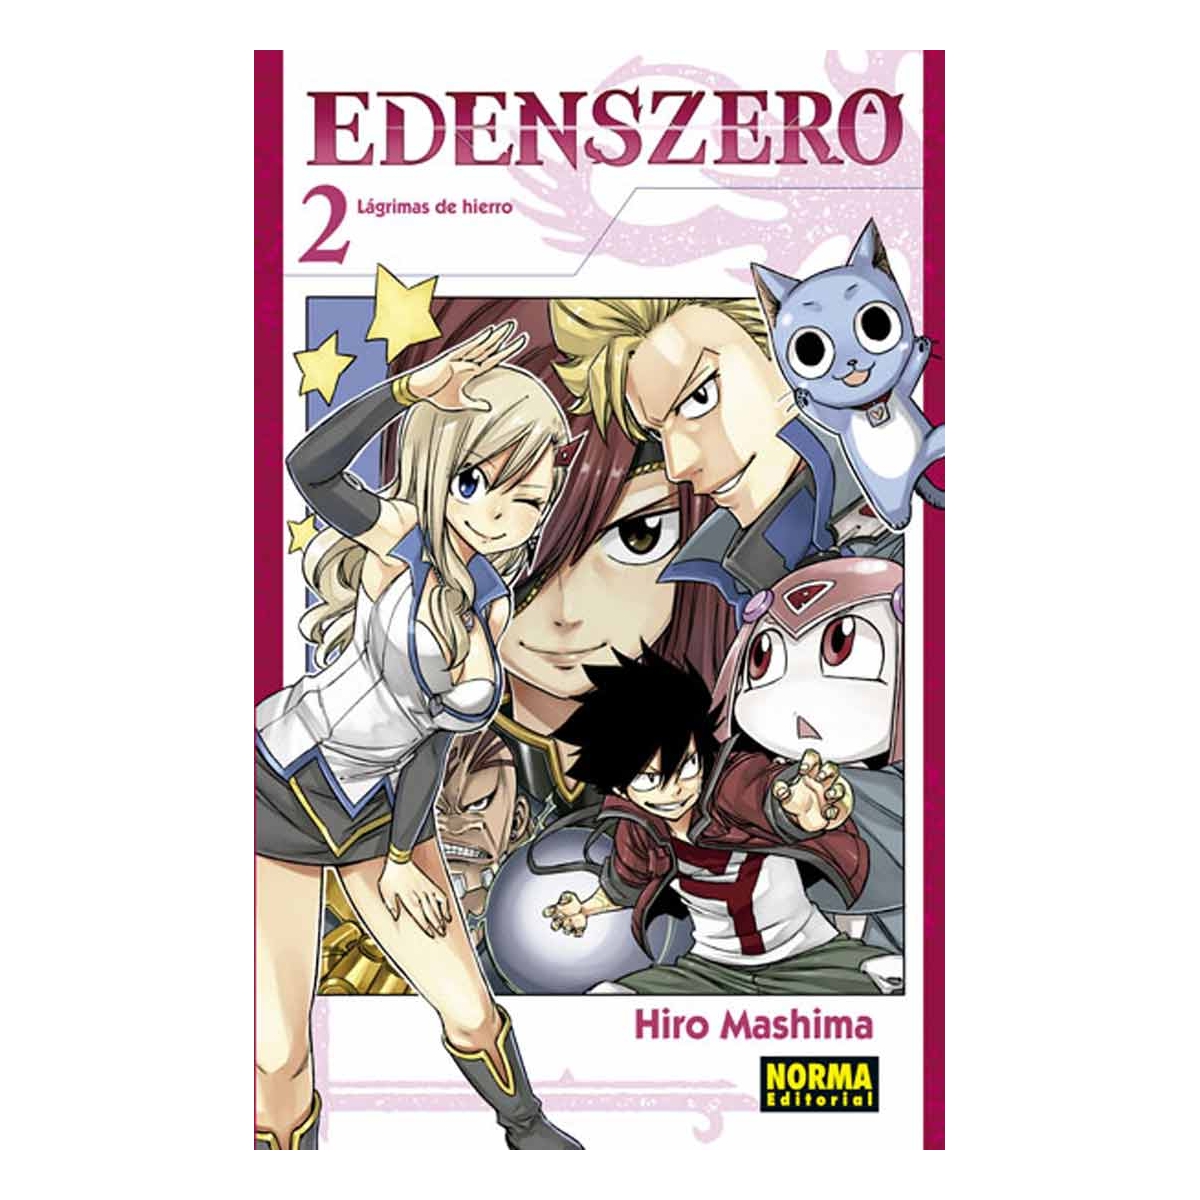 Edens Zero 02